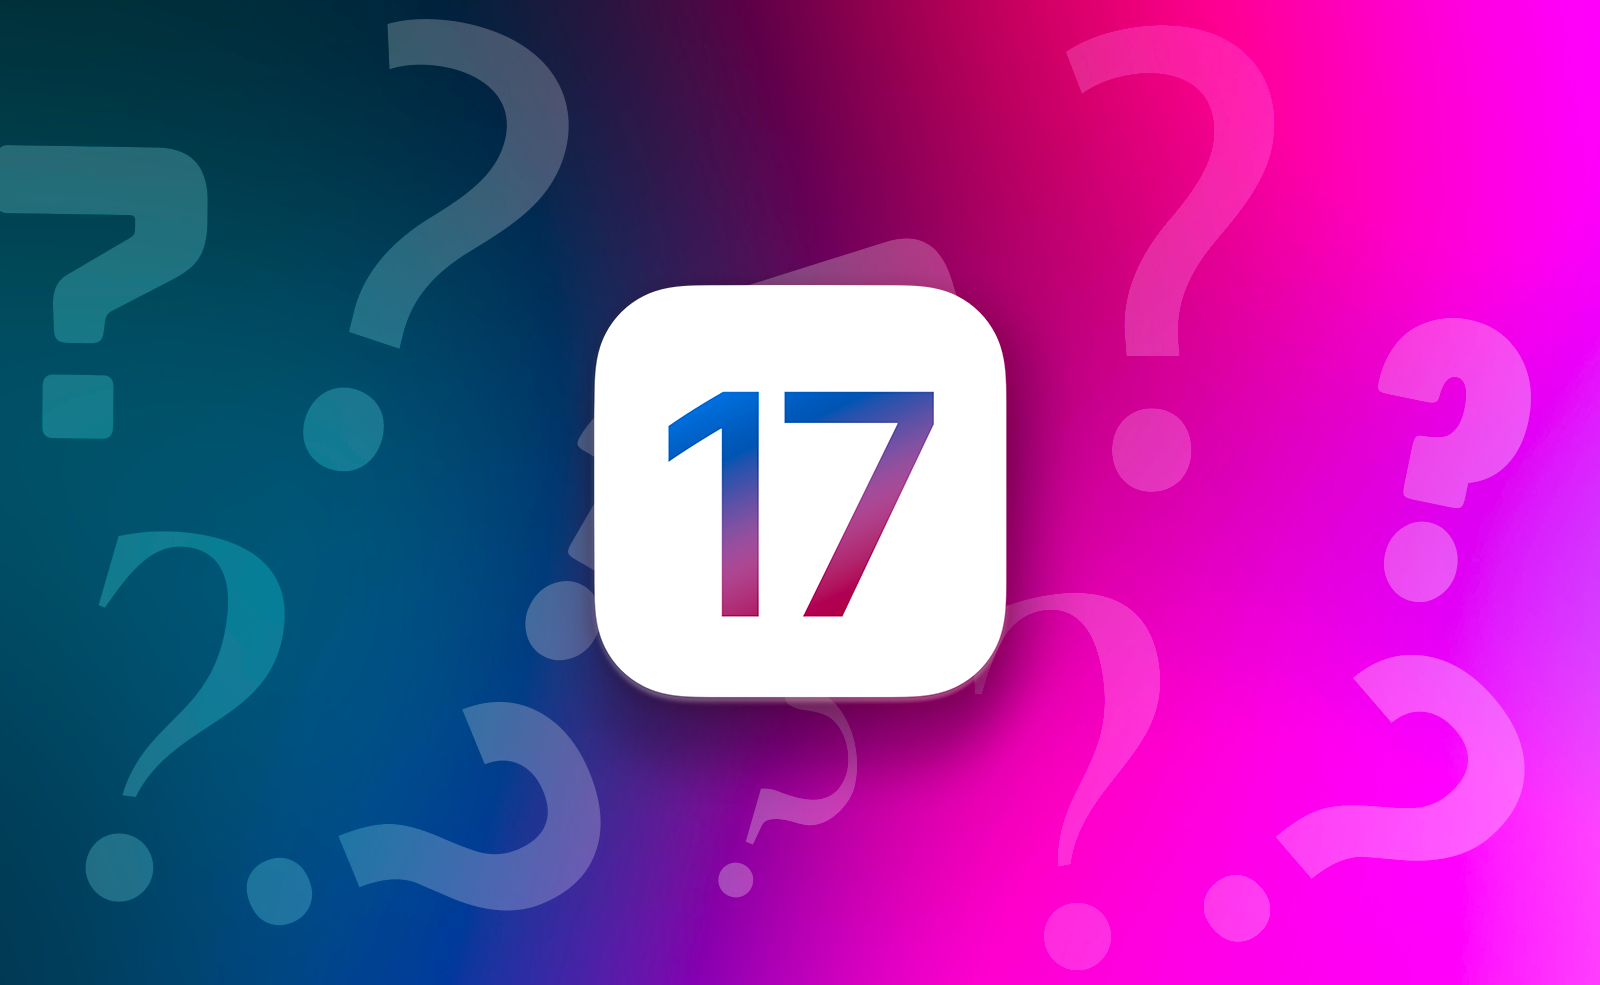 Rumeurs • Ce que l’on sait (peut-être) des prochaines fonctions d’iOS 17